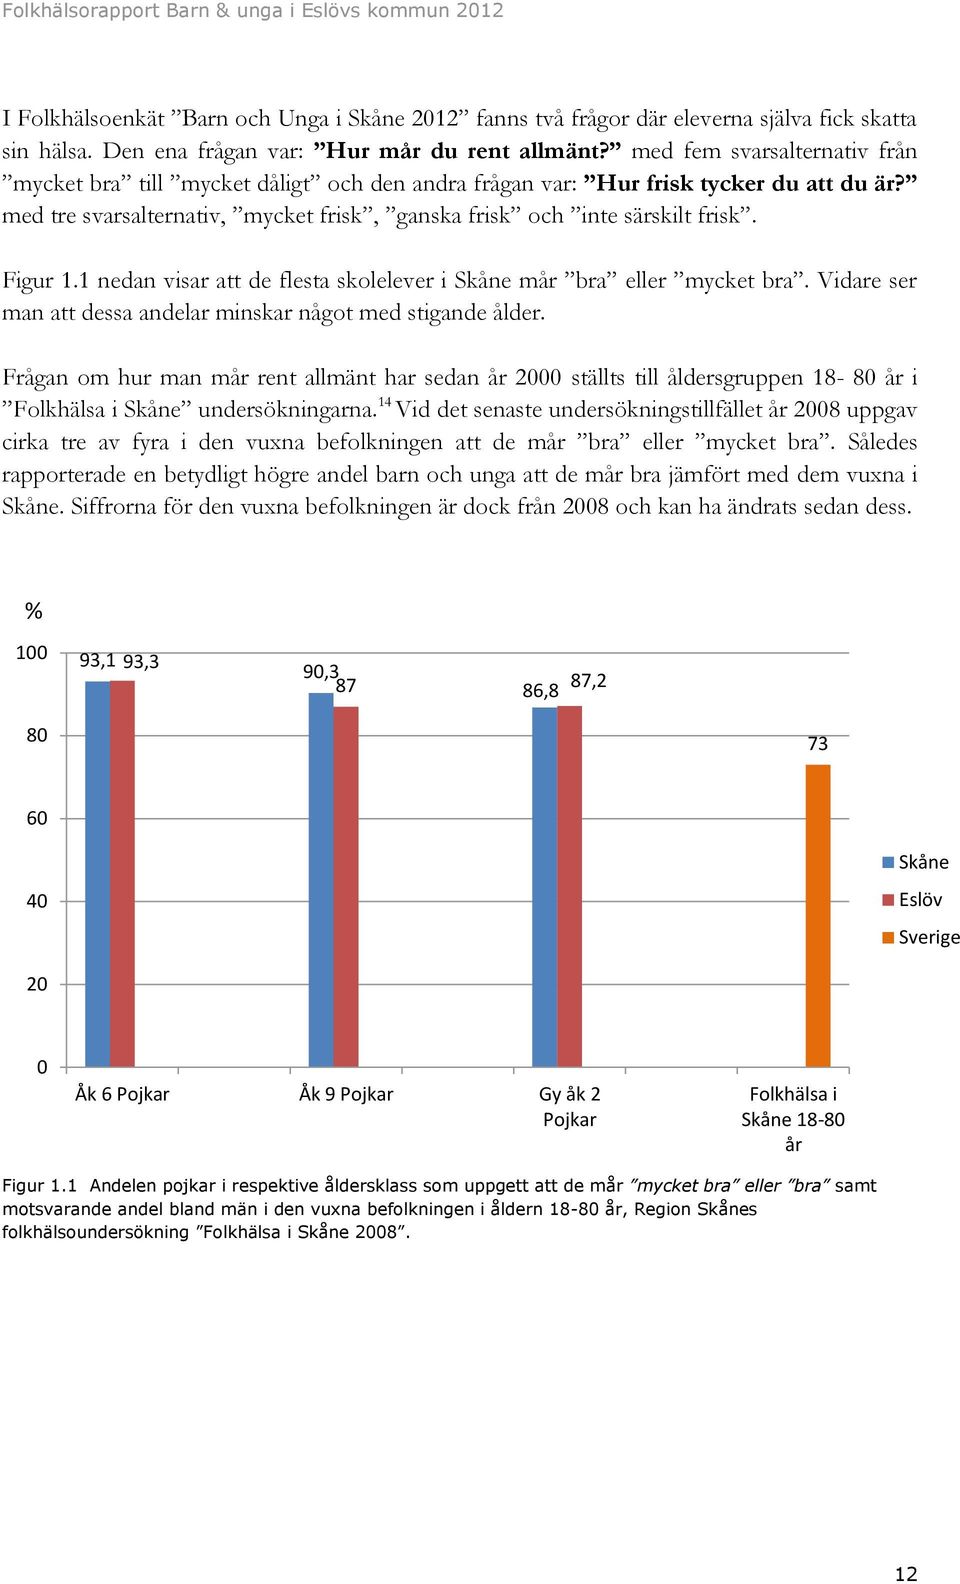 Figur 1.1 nedan visar att de flesta skolelever i Skåne mår bra eller mycket bra. Vidare ser man att dessa andelar minskar något med stigande ålder.